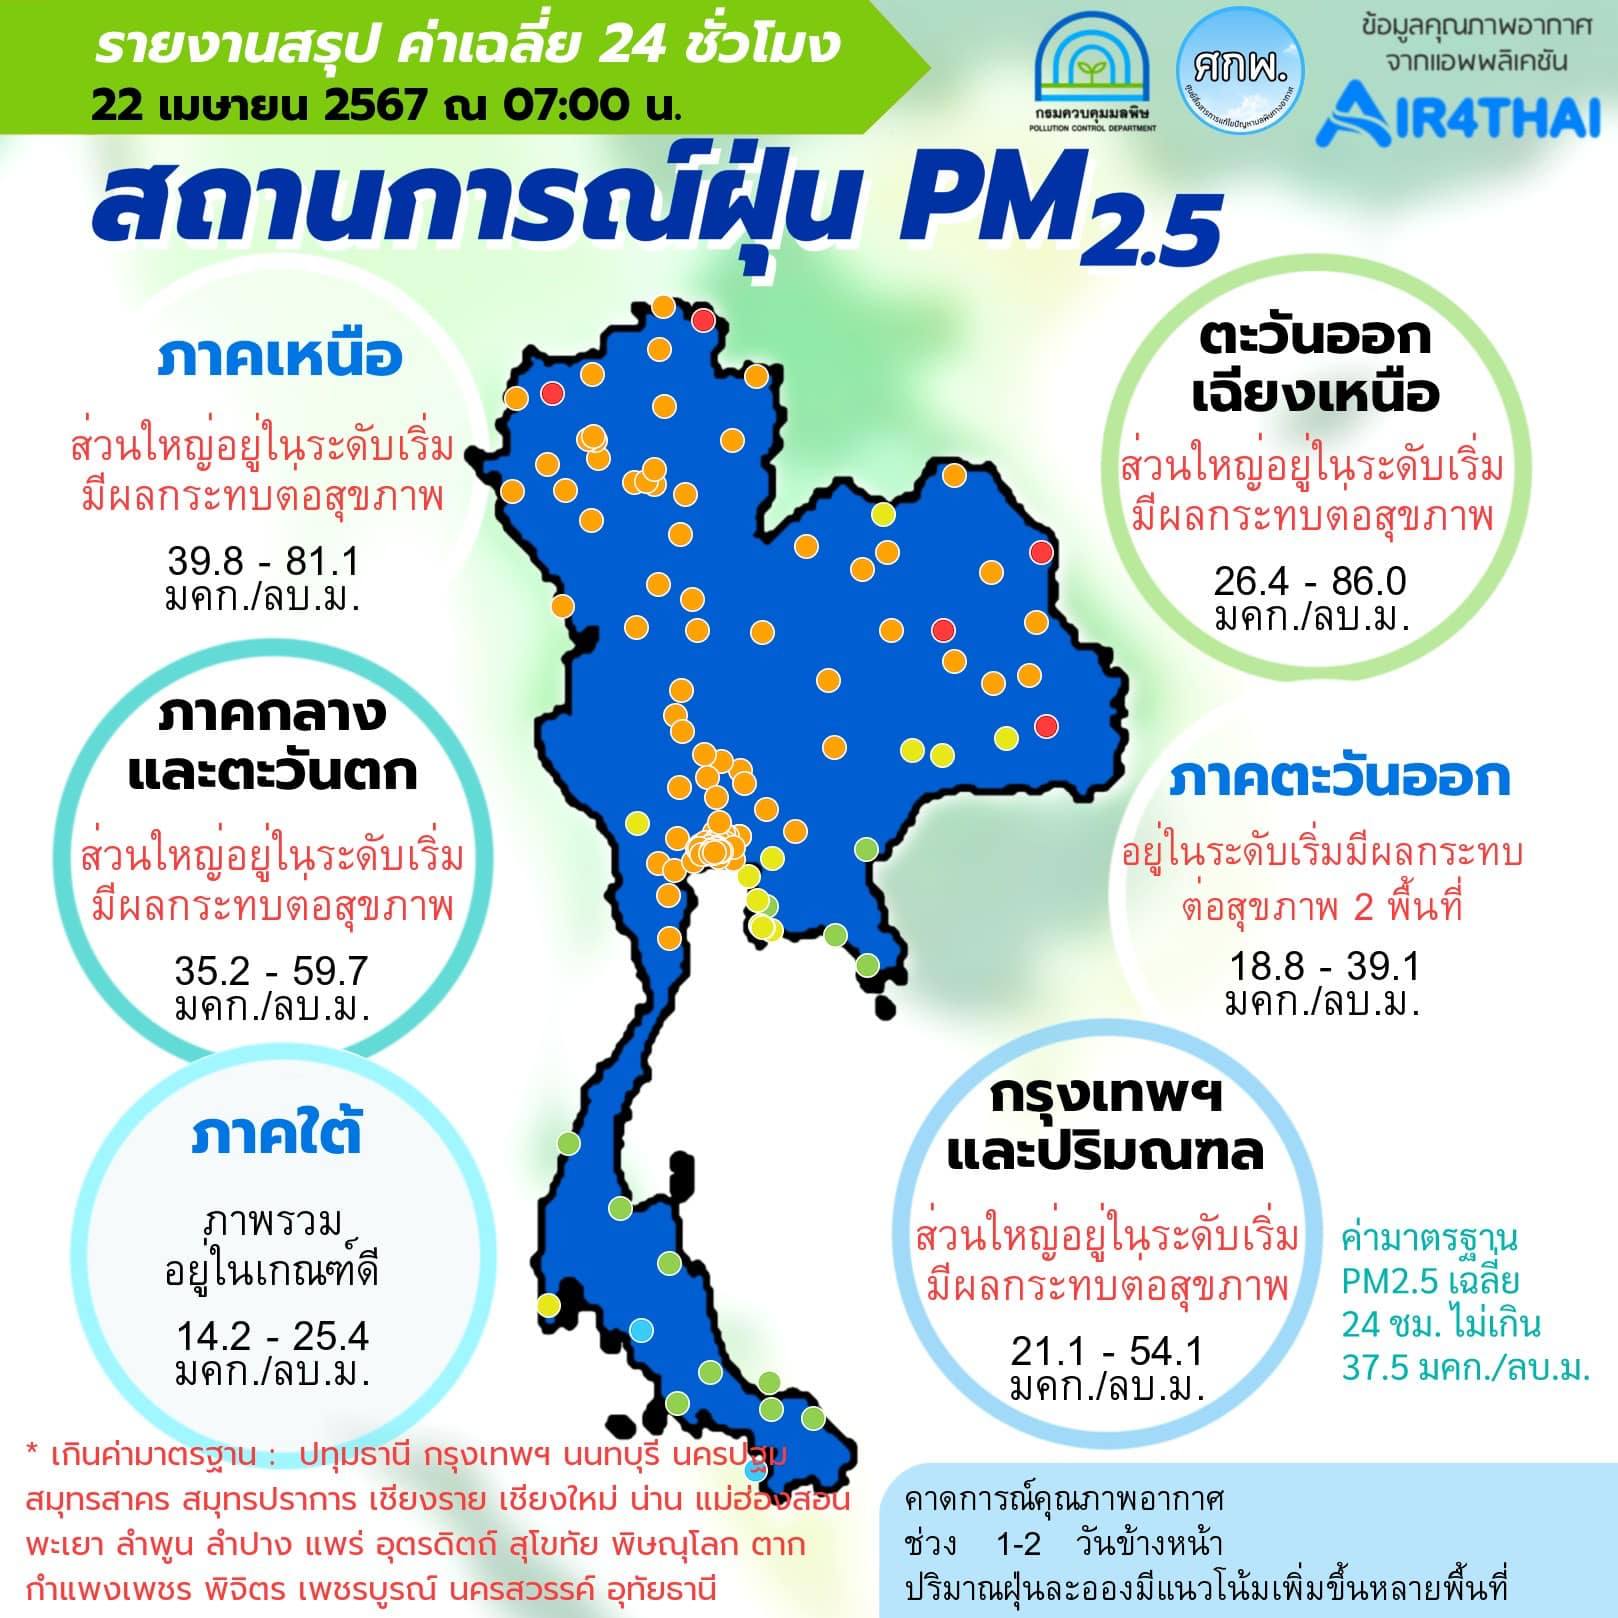 ศูนย์สื่อสารการแก้ไขปัญหามลพิษทางอากาศ รายงานการติดตามตรวจสอบคุณภาพอากาศ ประจำวันที่ 22 เมษายน 2567 ณ 07:00 น 